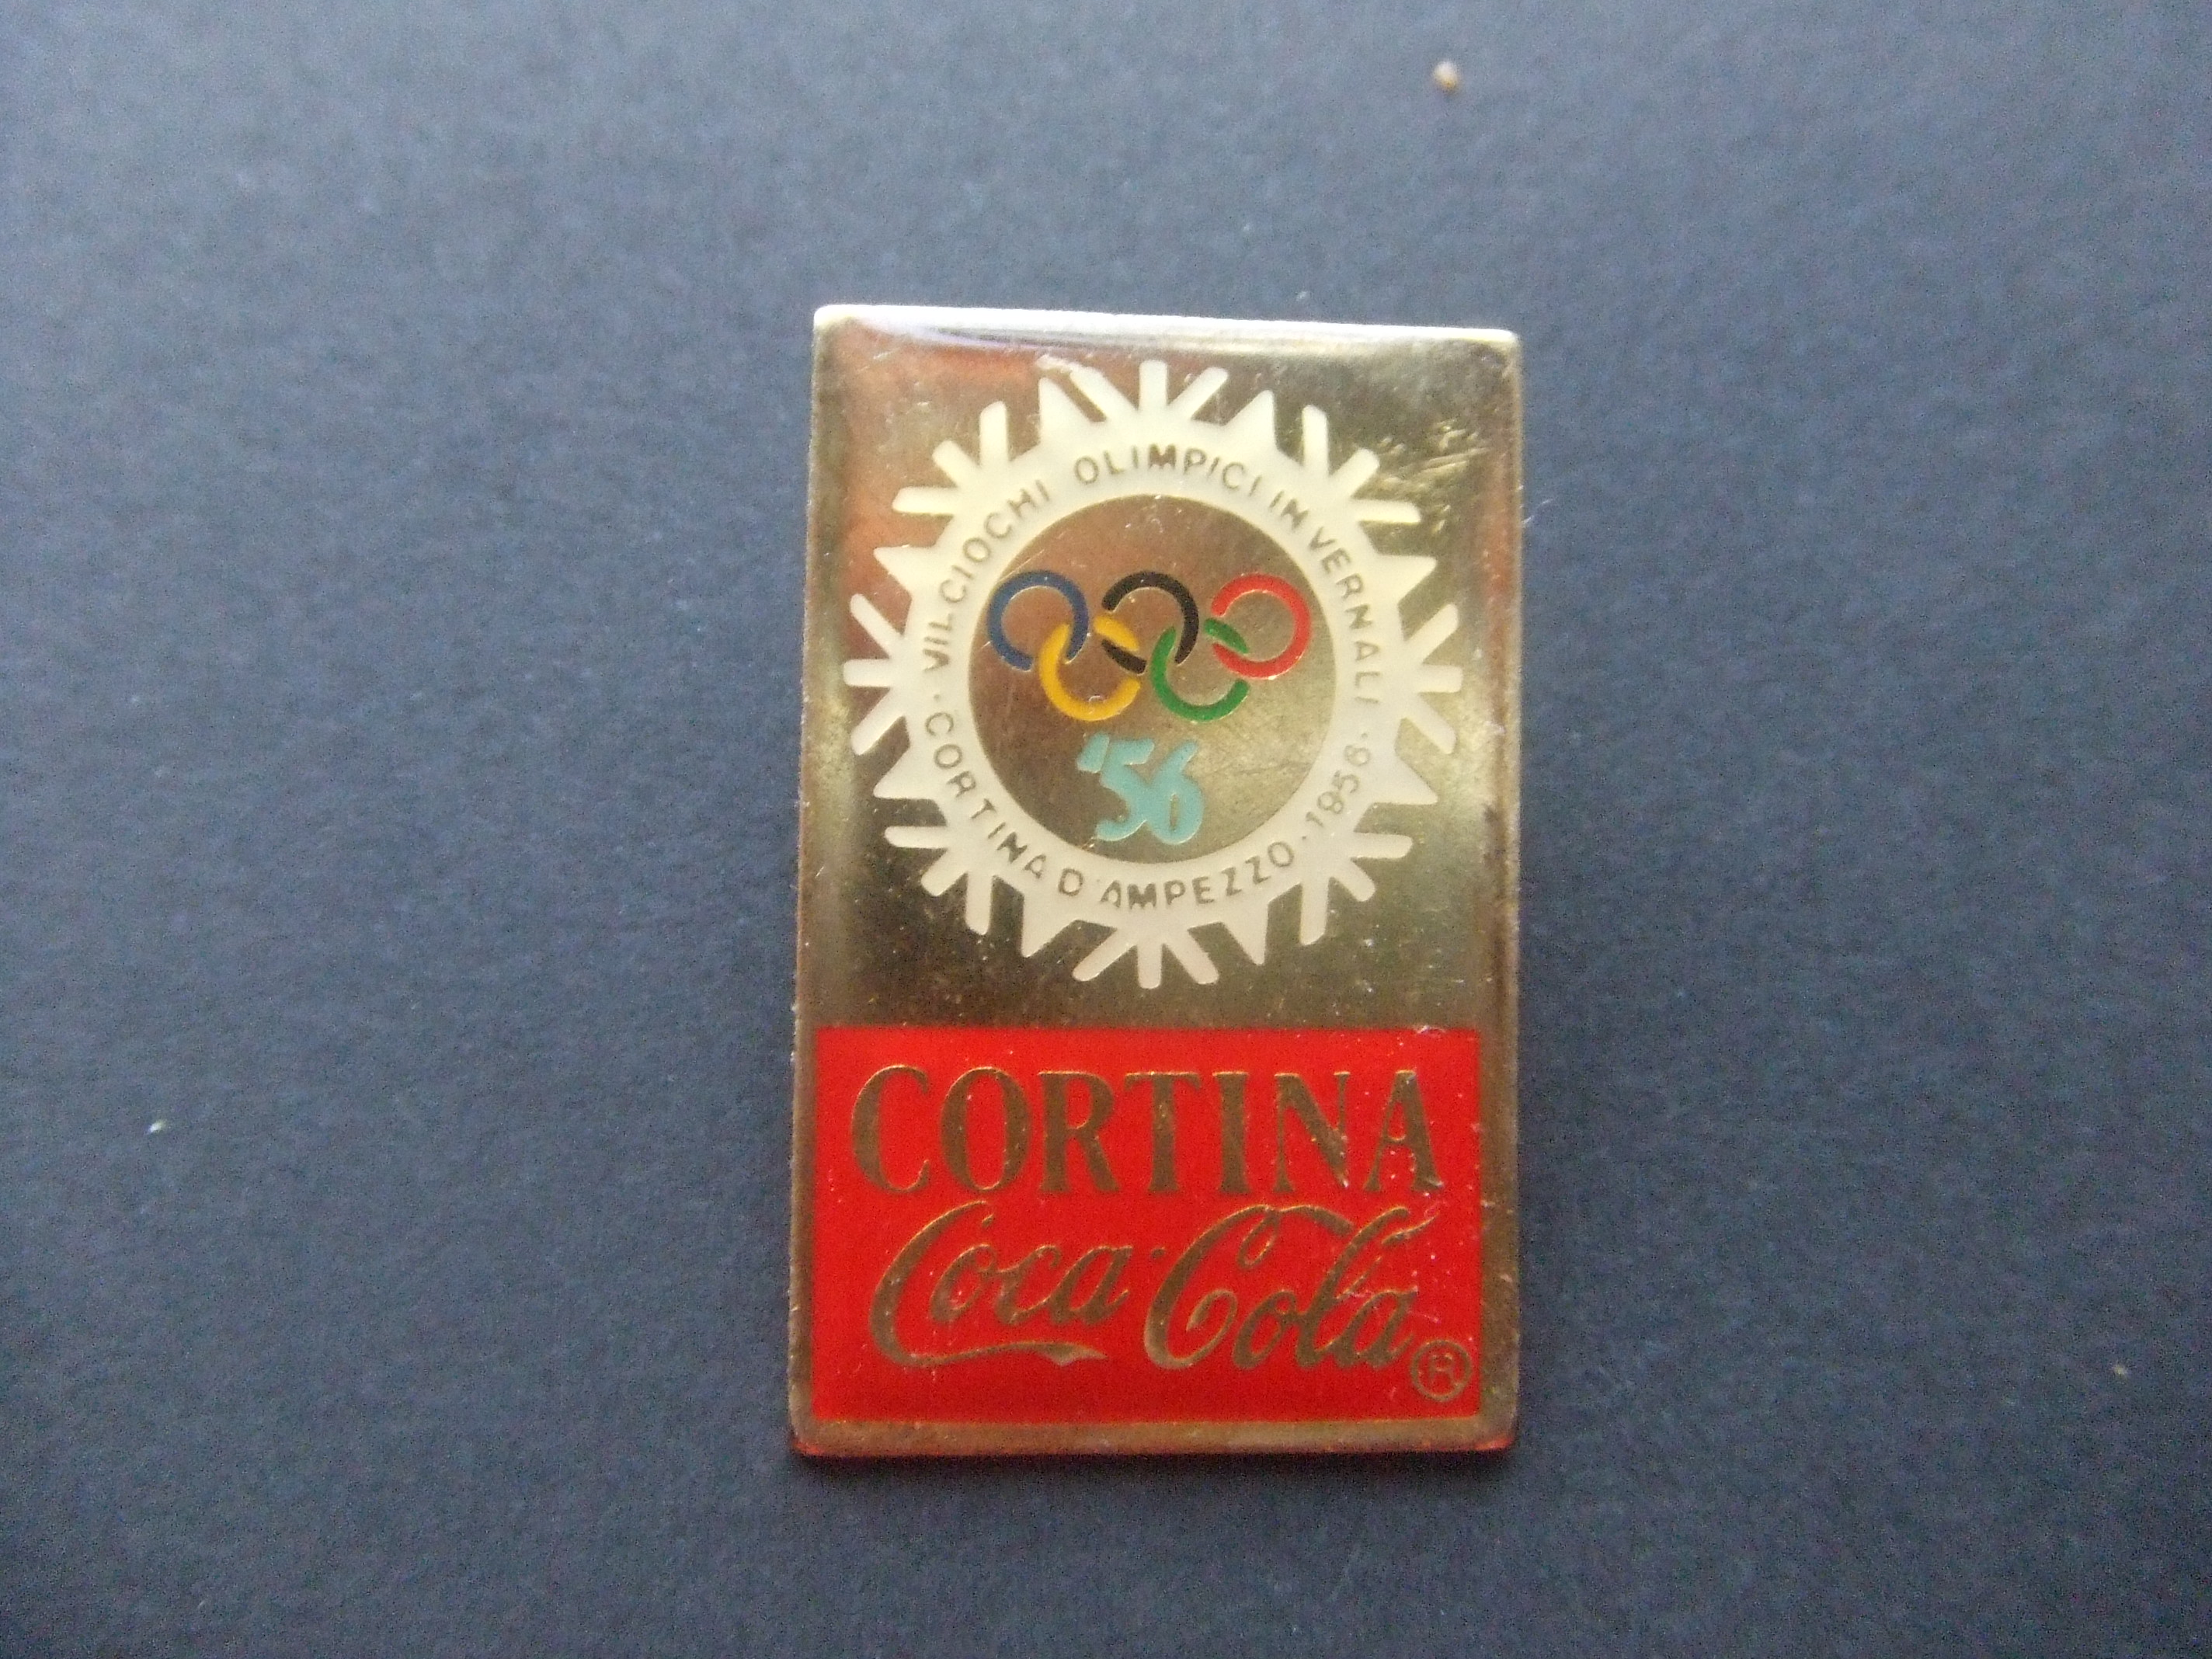 Coca Cola Olympische Spelen  Cortina blauwe cijfers